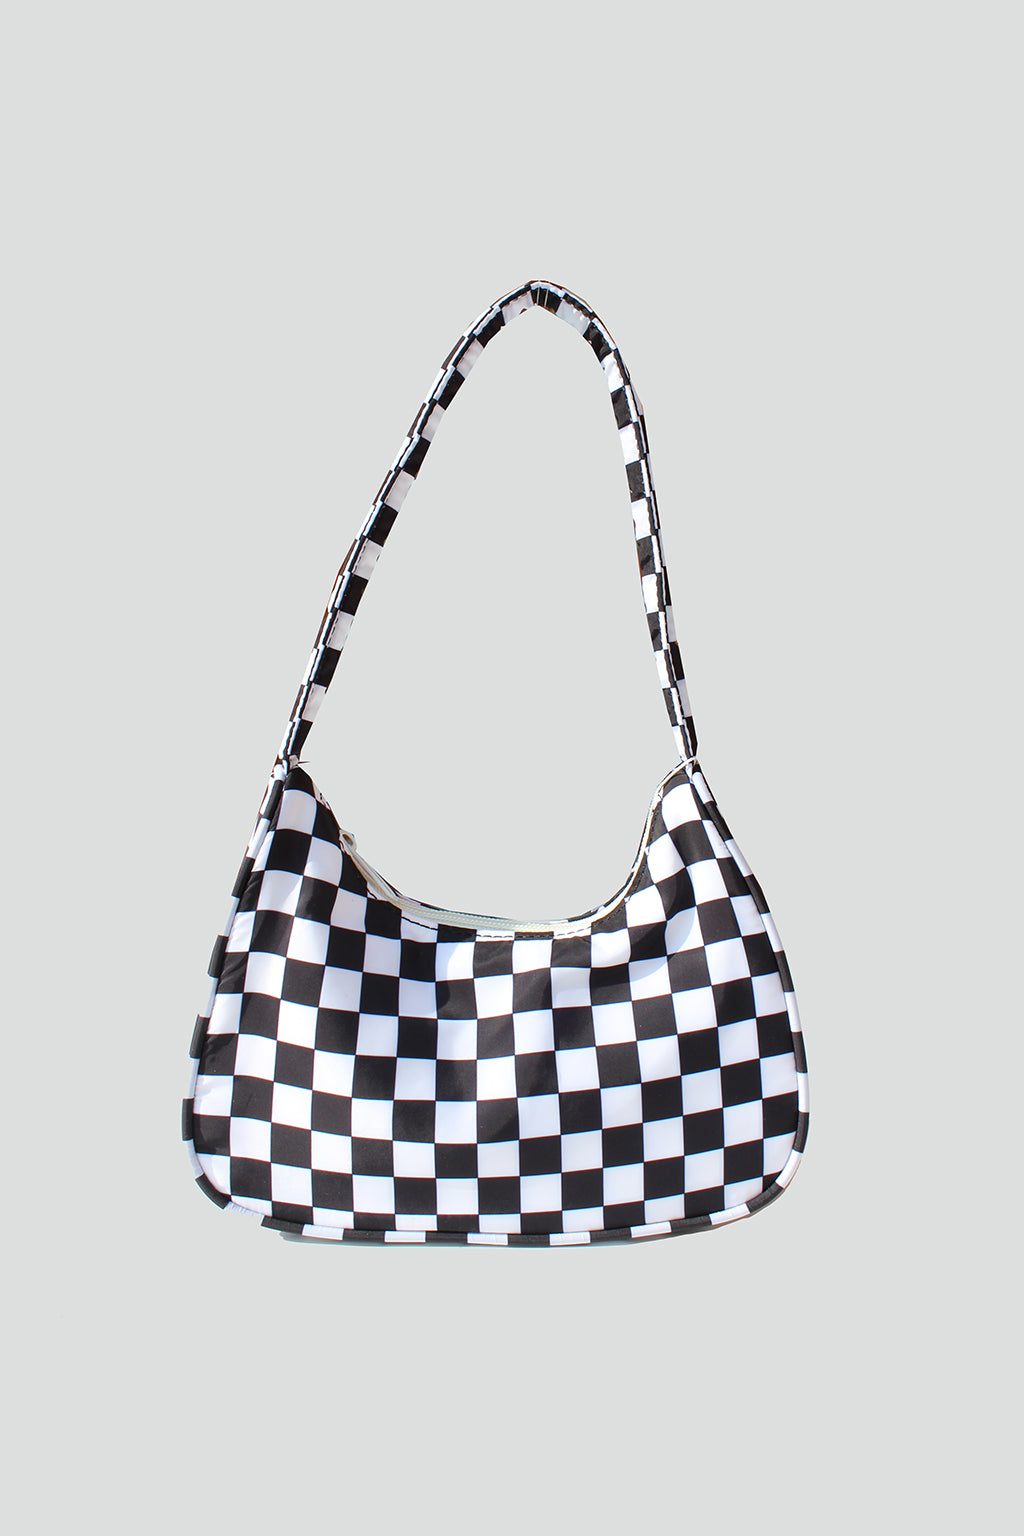 Lily Checkered Nylon Baguette Bag - Street Level